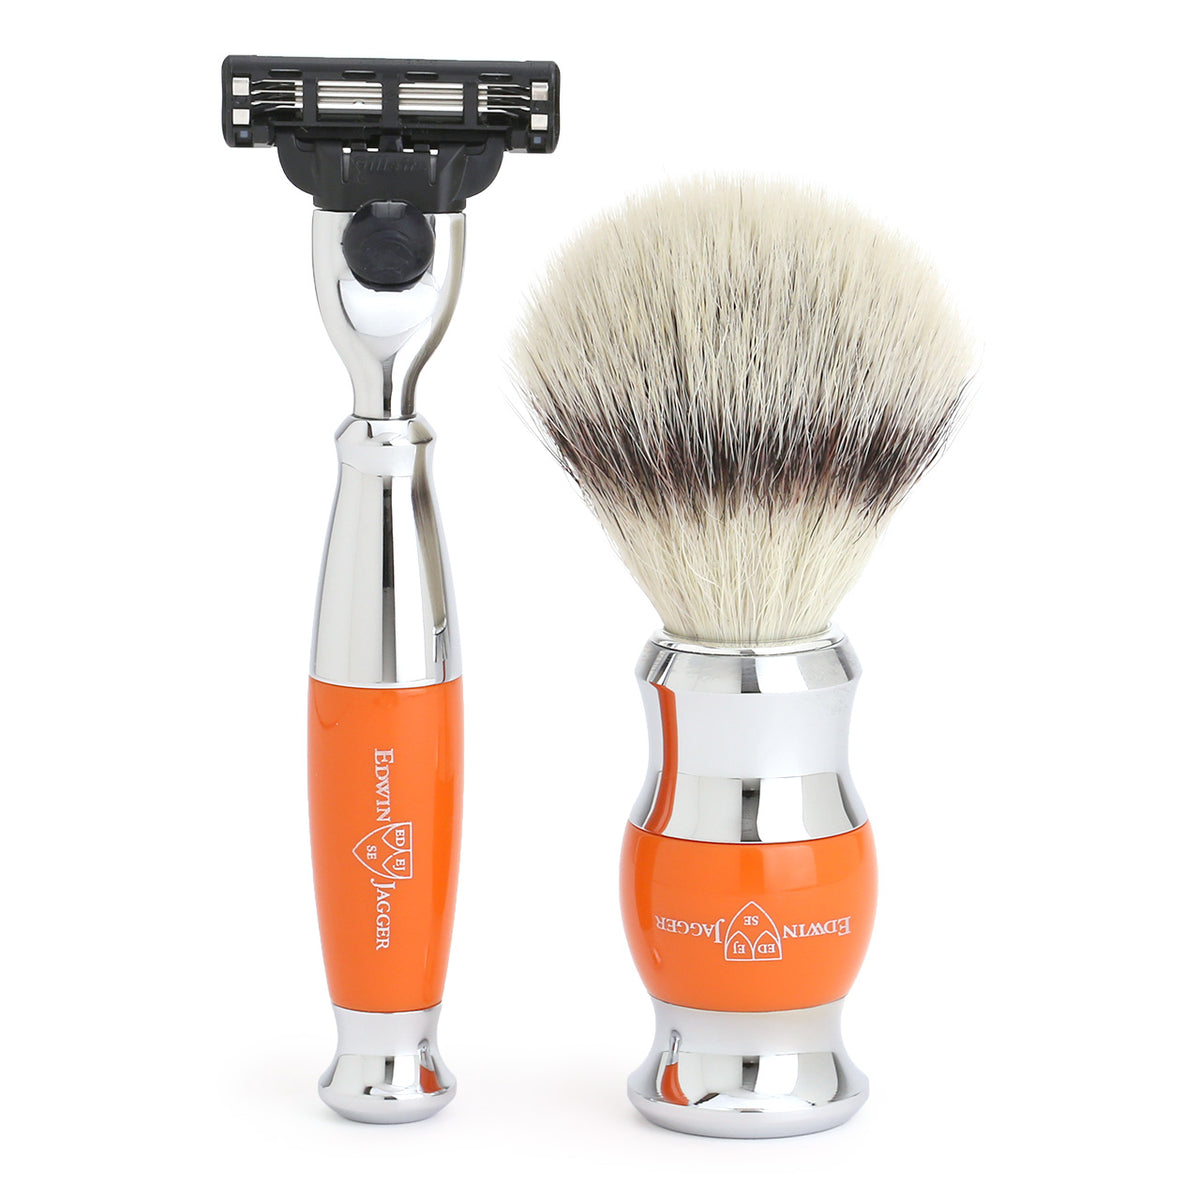 Mach3 Razor and Cruelty-Free Shaving Brush in Orange